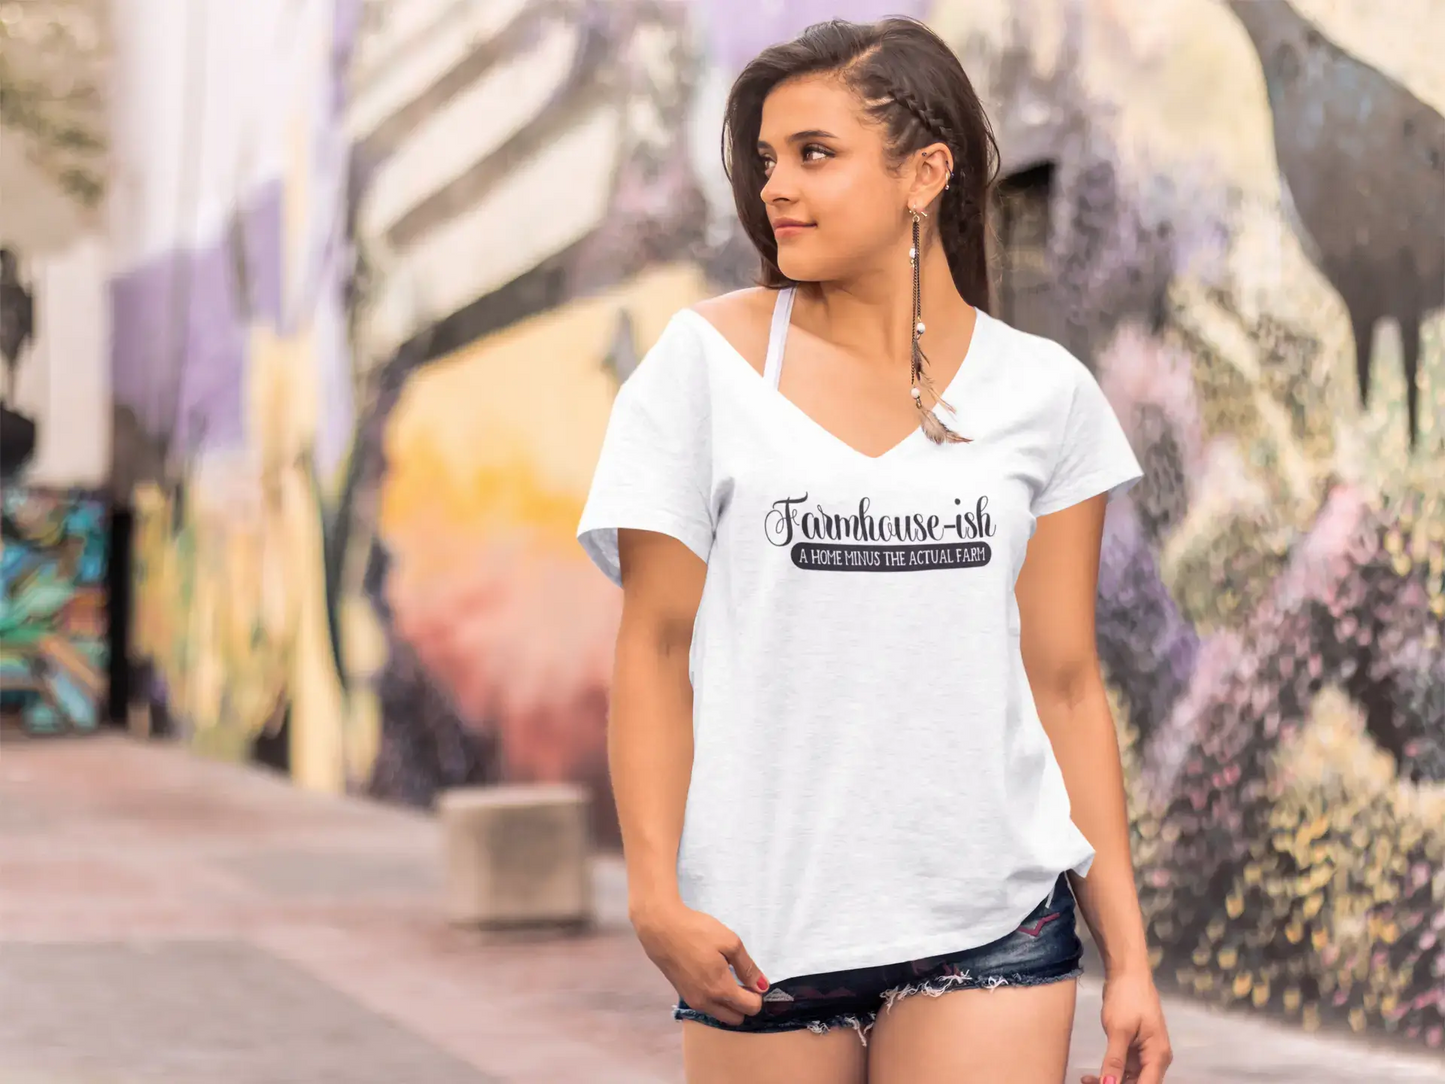 T-Shirt ULTRABASIC pour femmes, ferme-ish a Home moins la ferme réelle-T-Shirt drôle à manches courtes